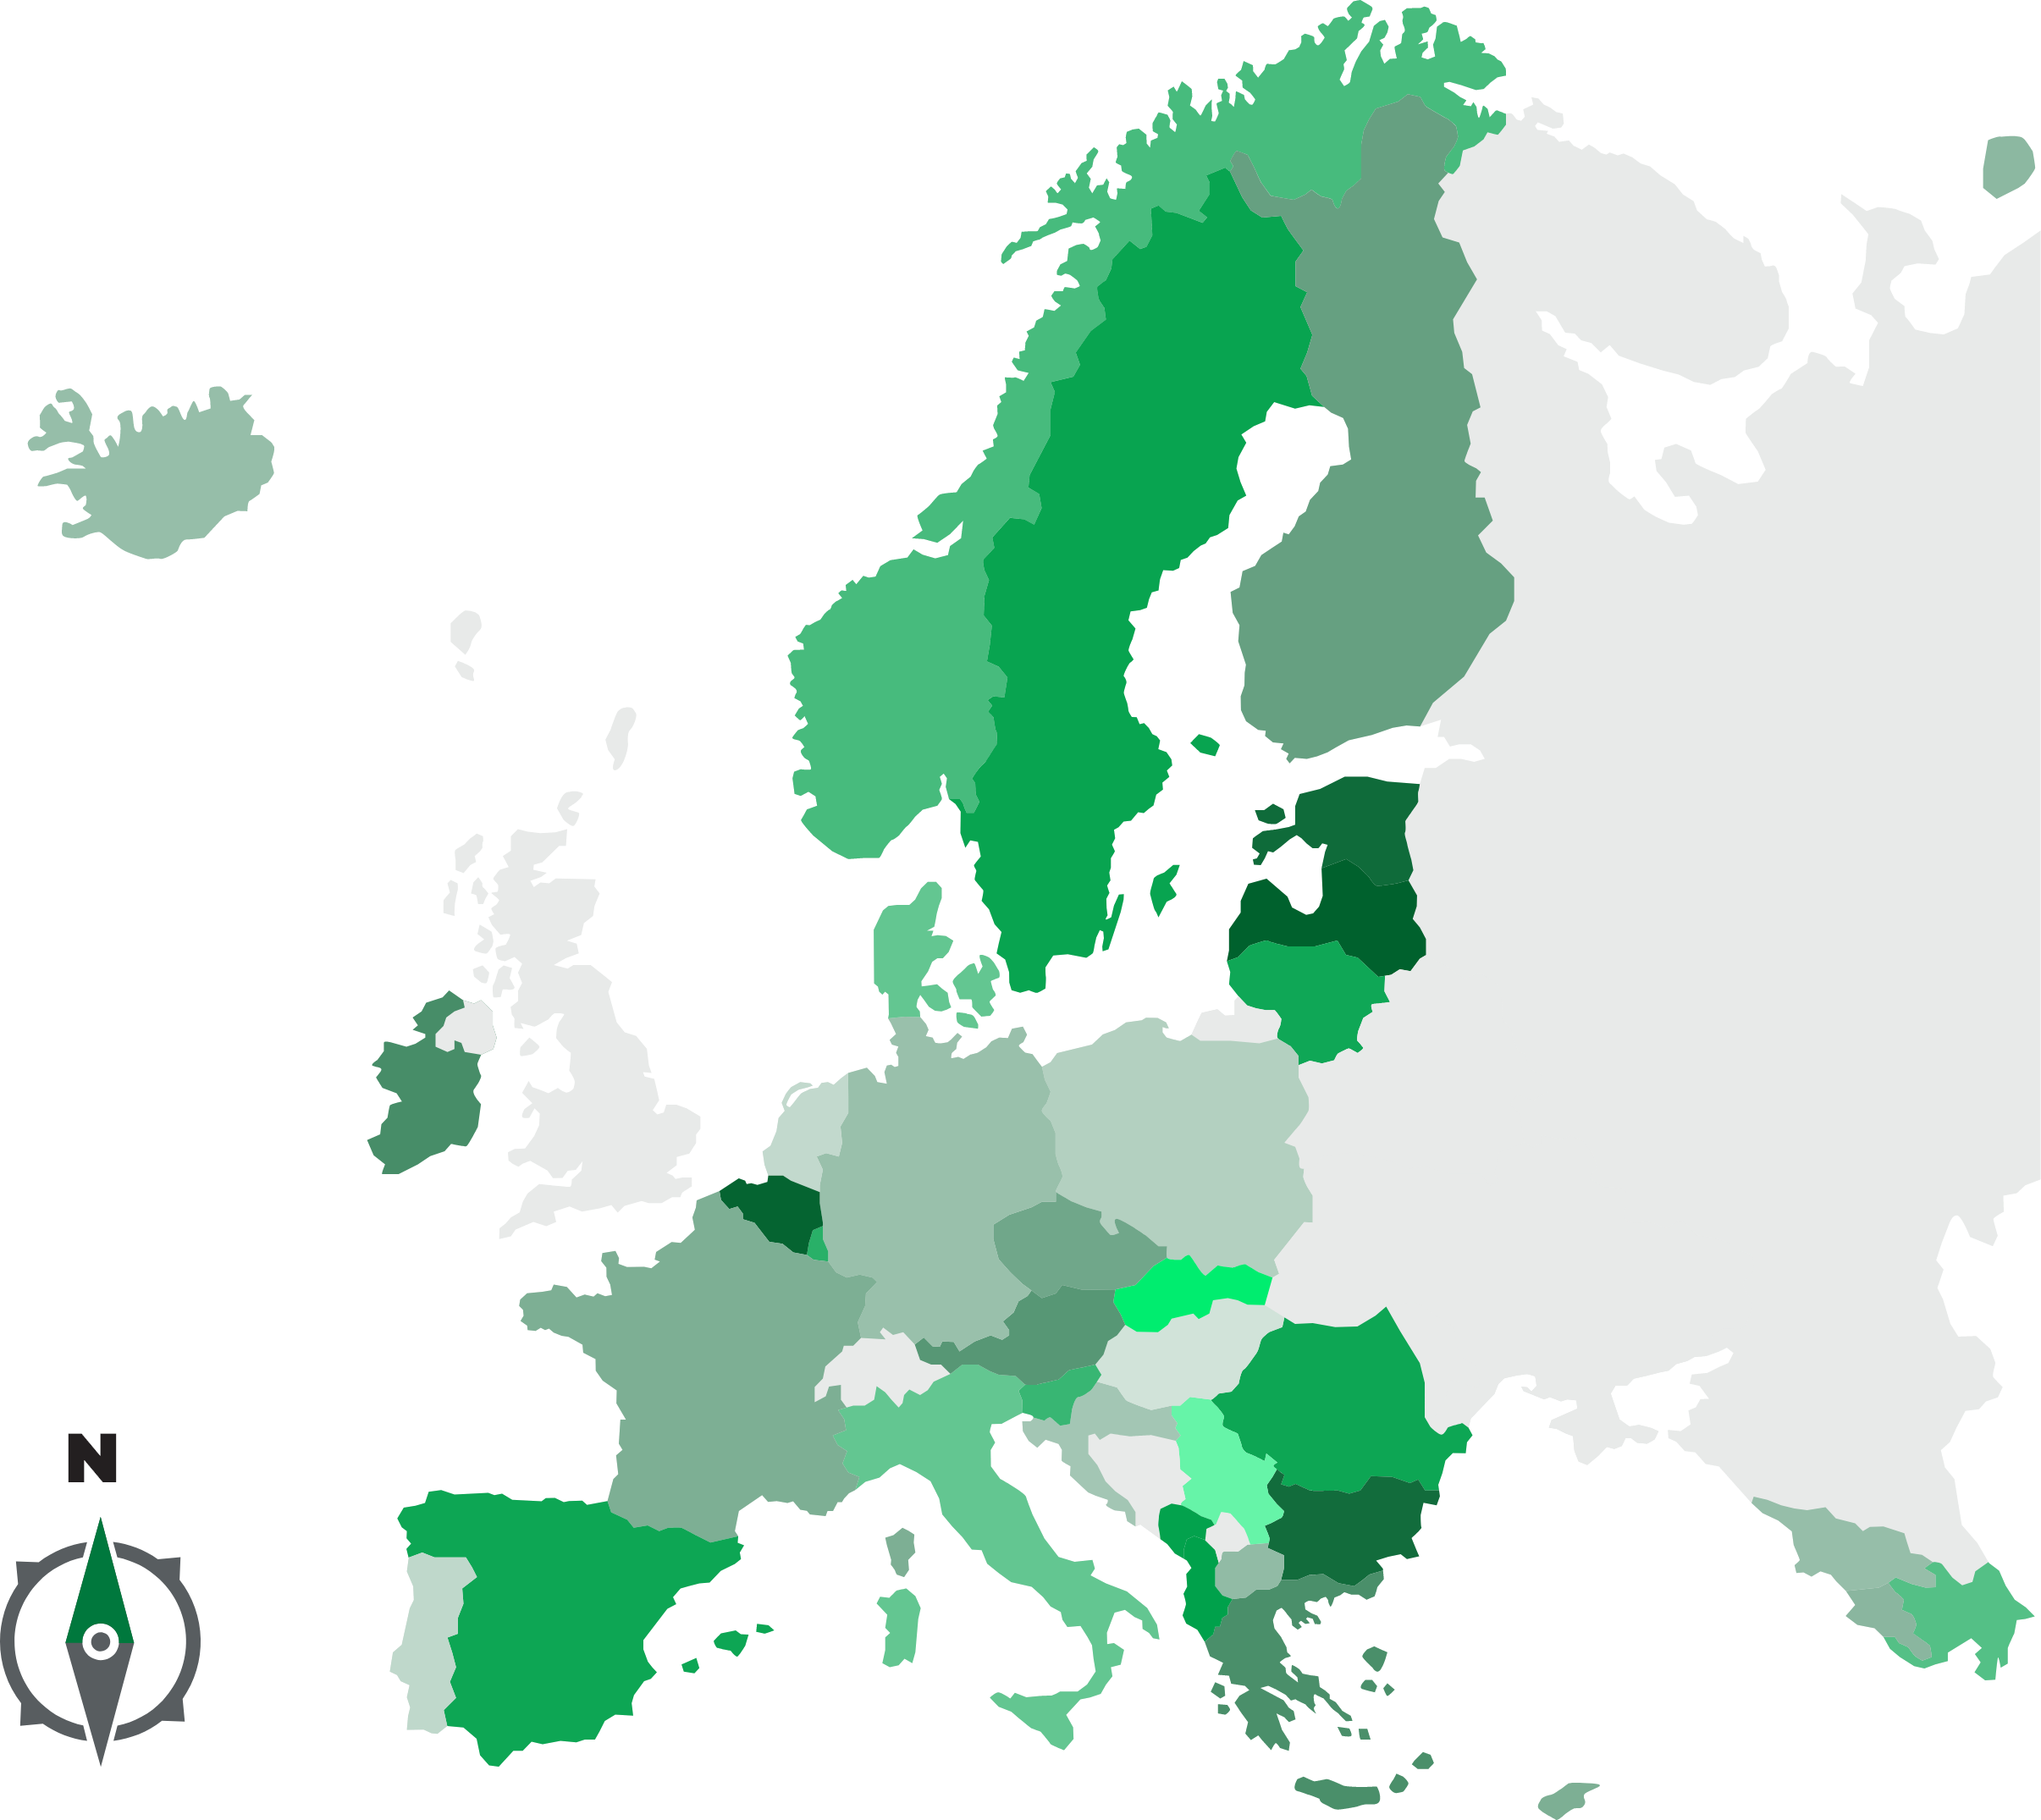 Mappa europea che evidenzia gli stati aderenti al progetto PCR